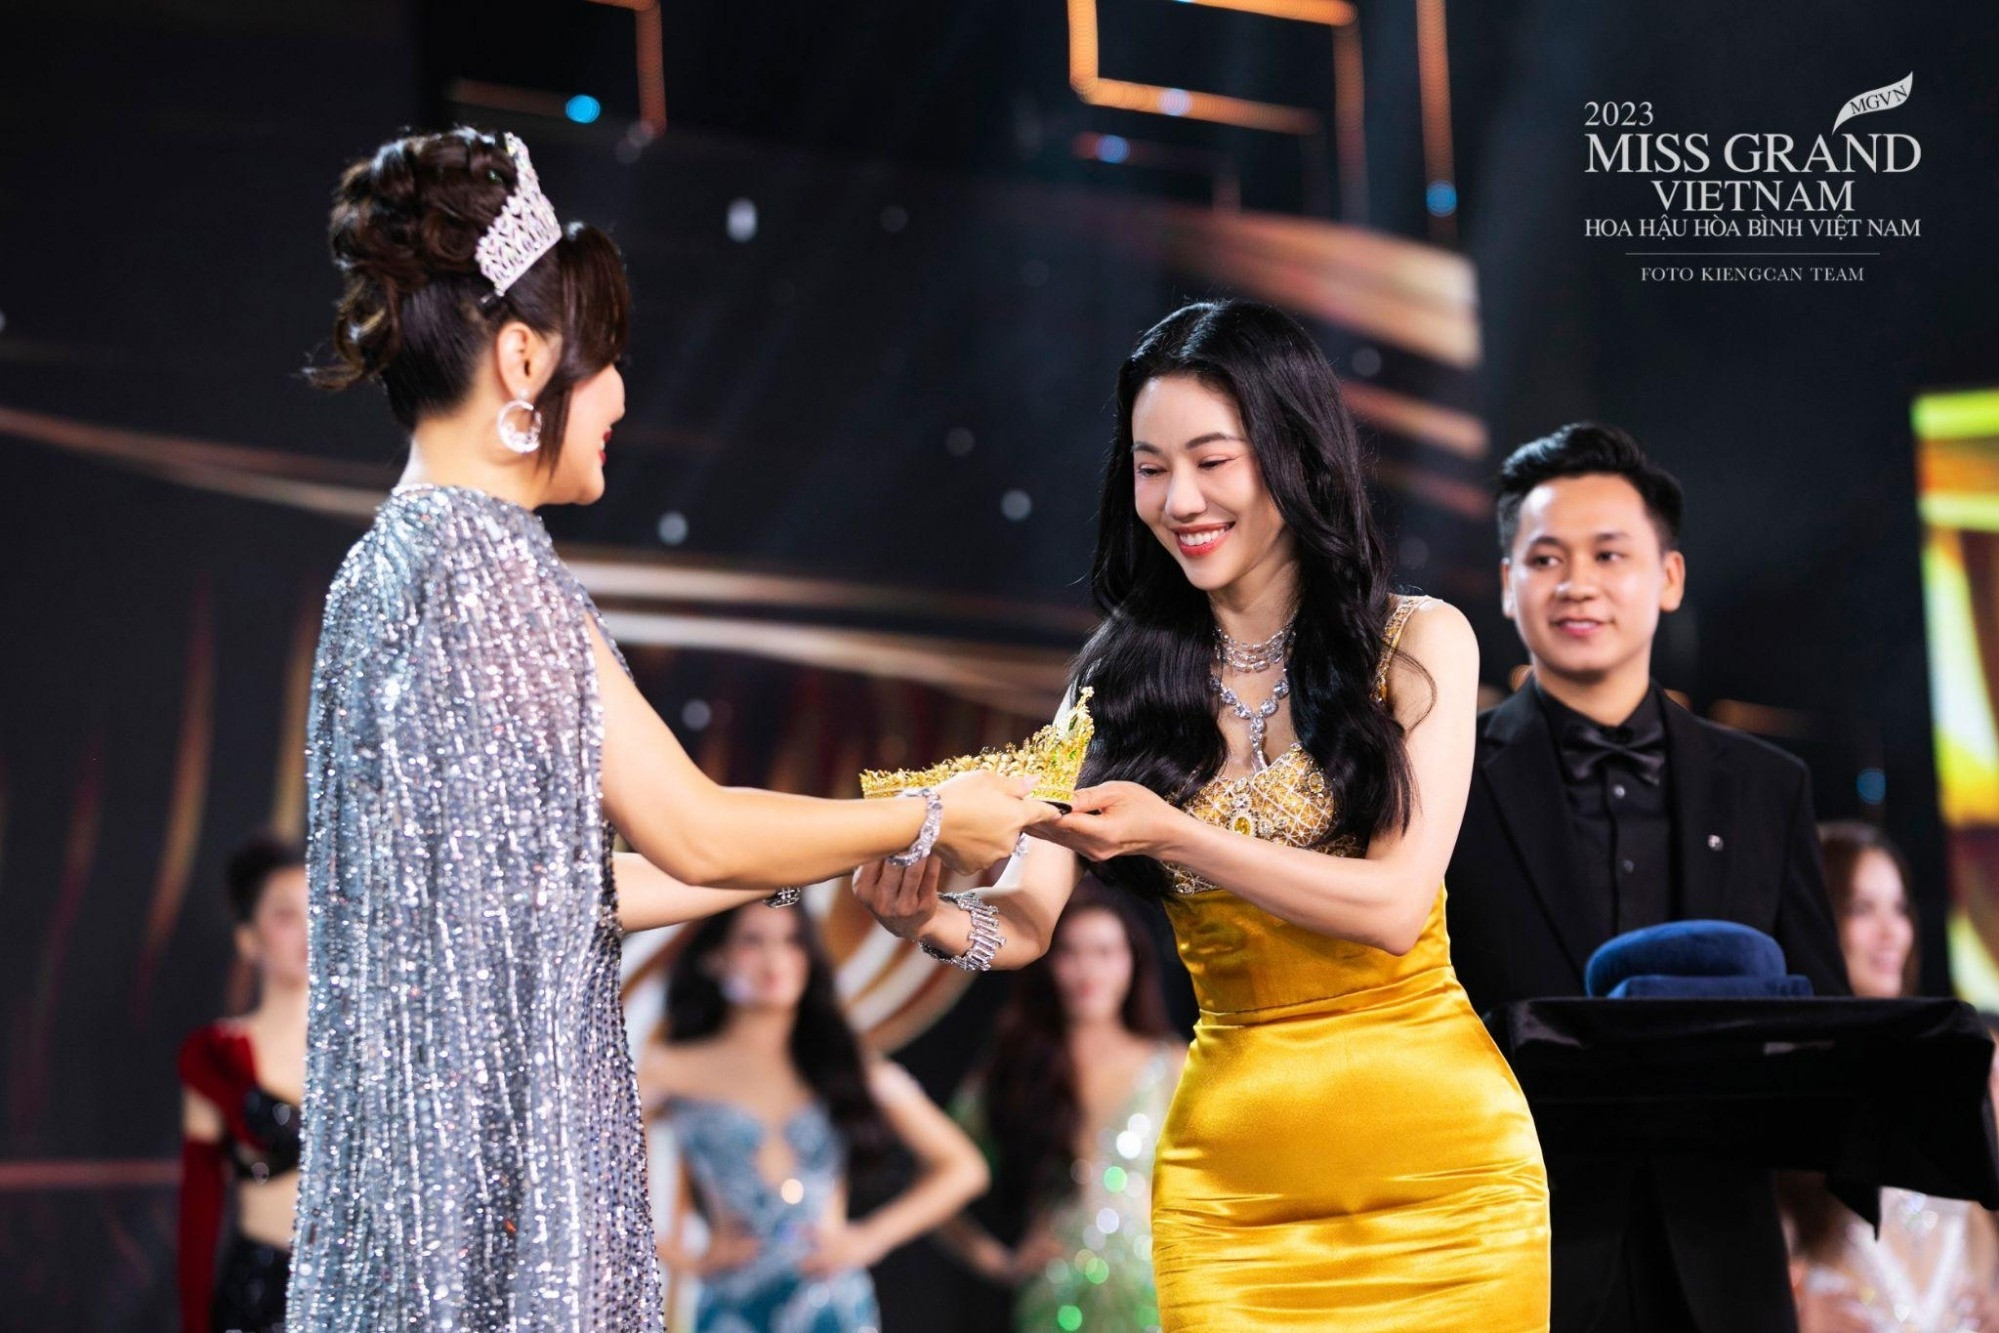 Thời khắc chuyển giao vương miện Wings of the grand của Miss Grand Vietnam 2023